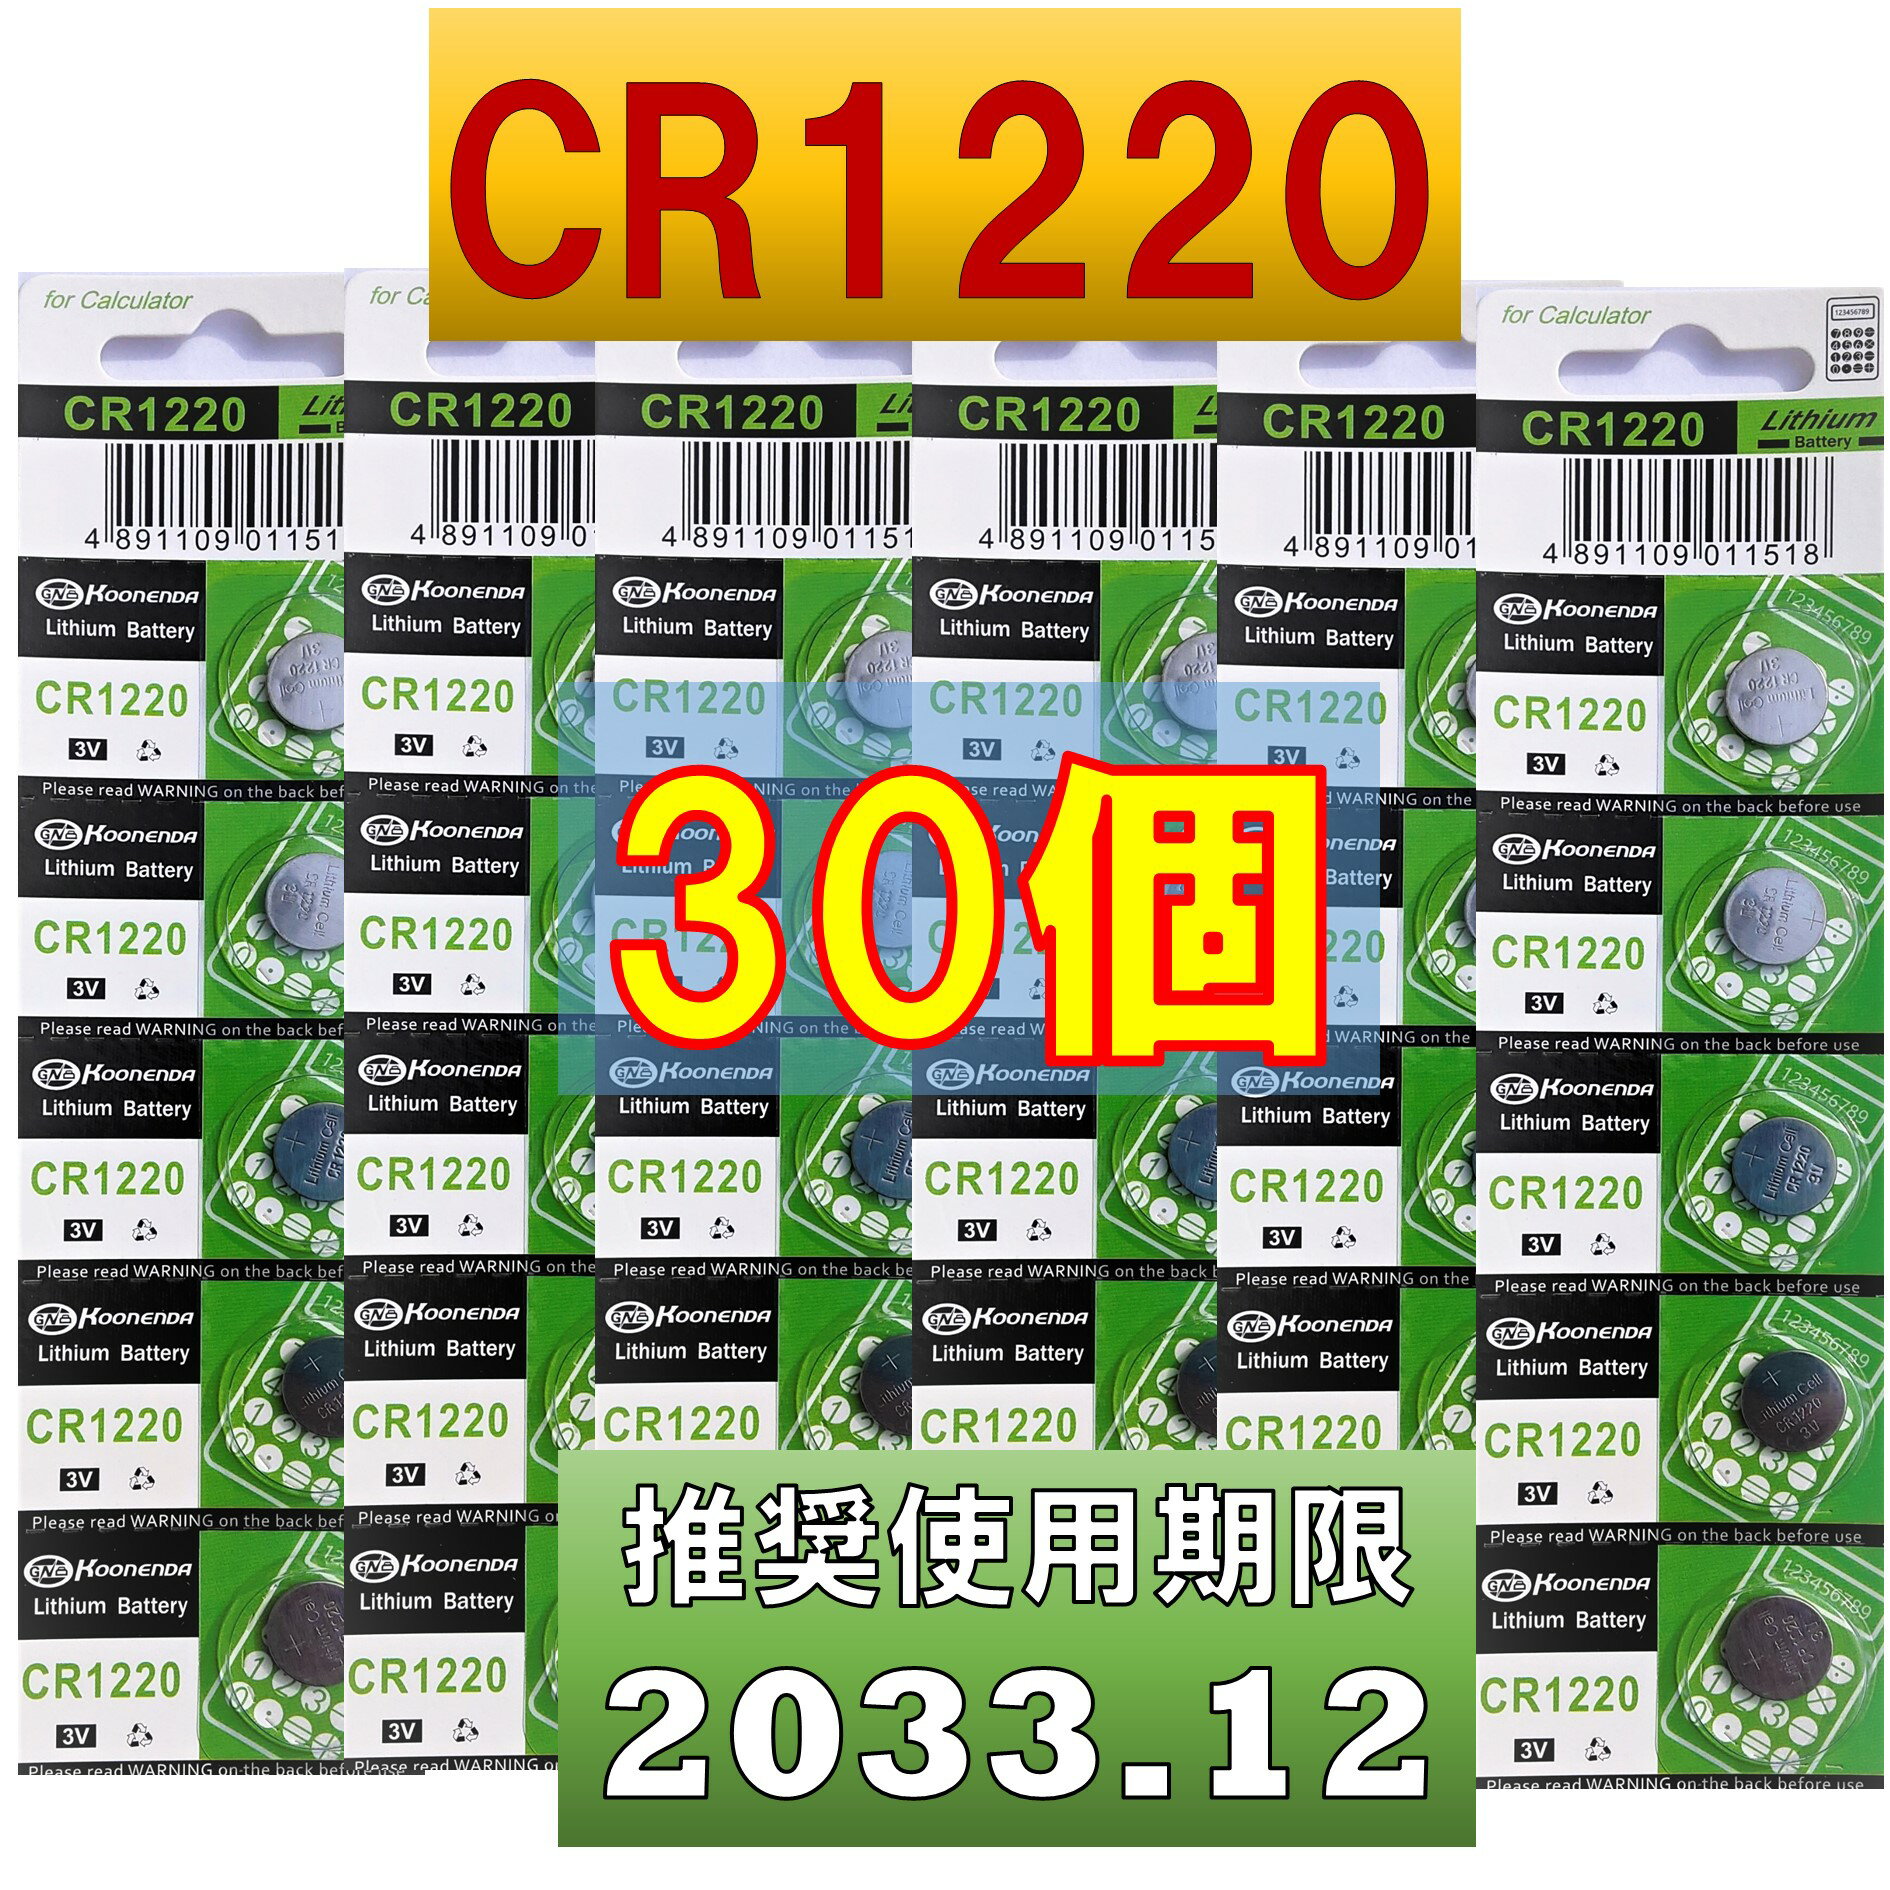 CR1220 `E{^dr 30 gp 2033N12